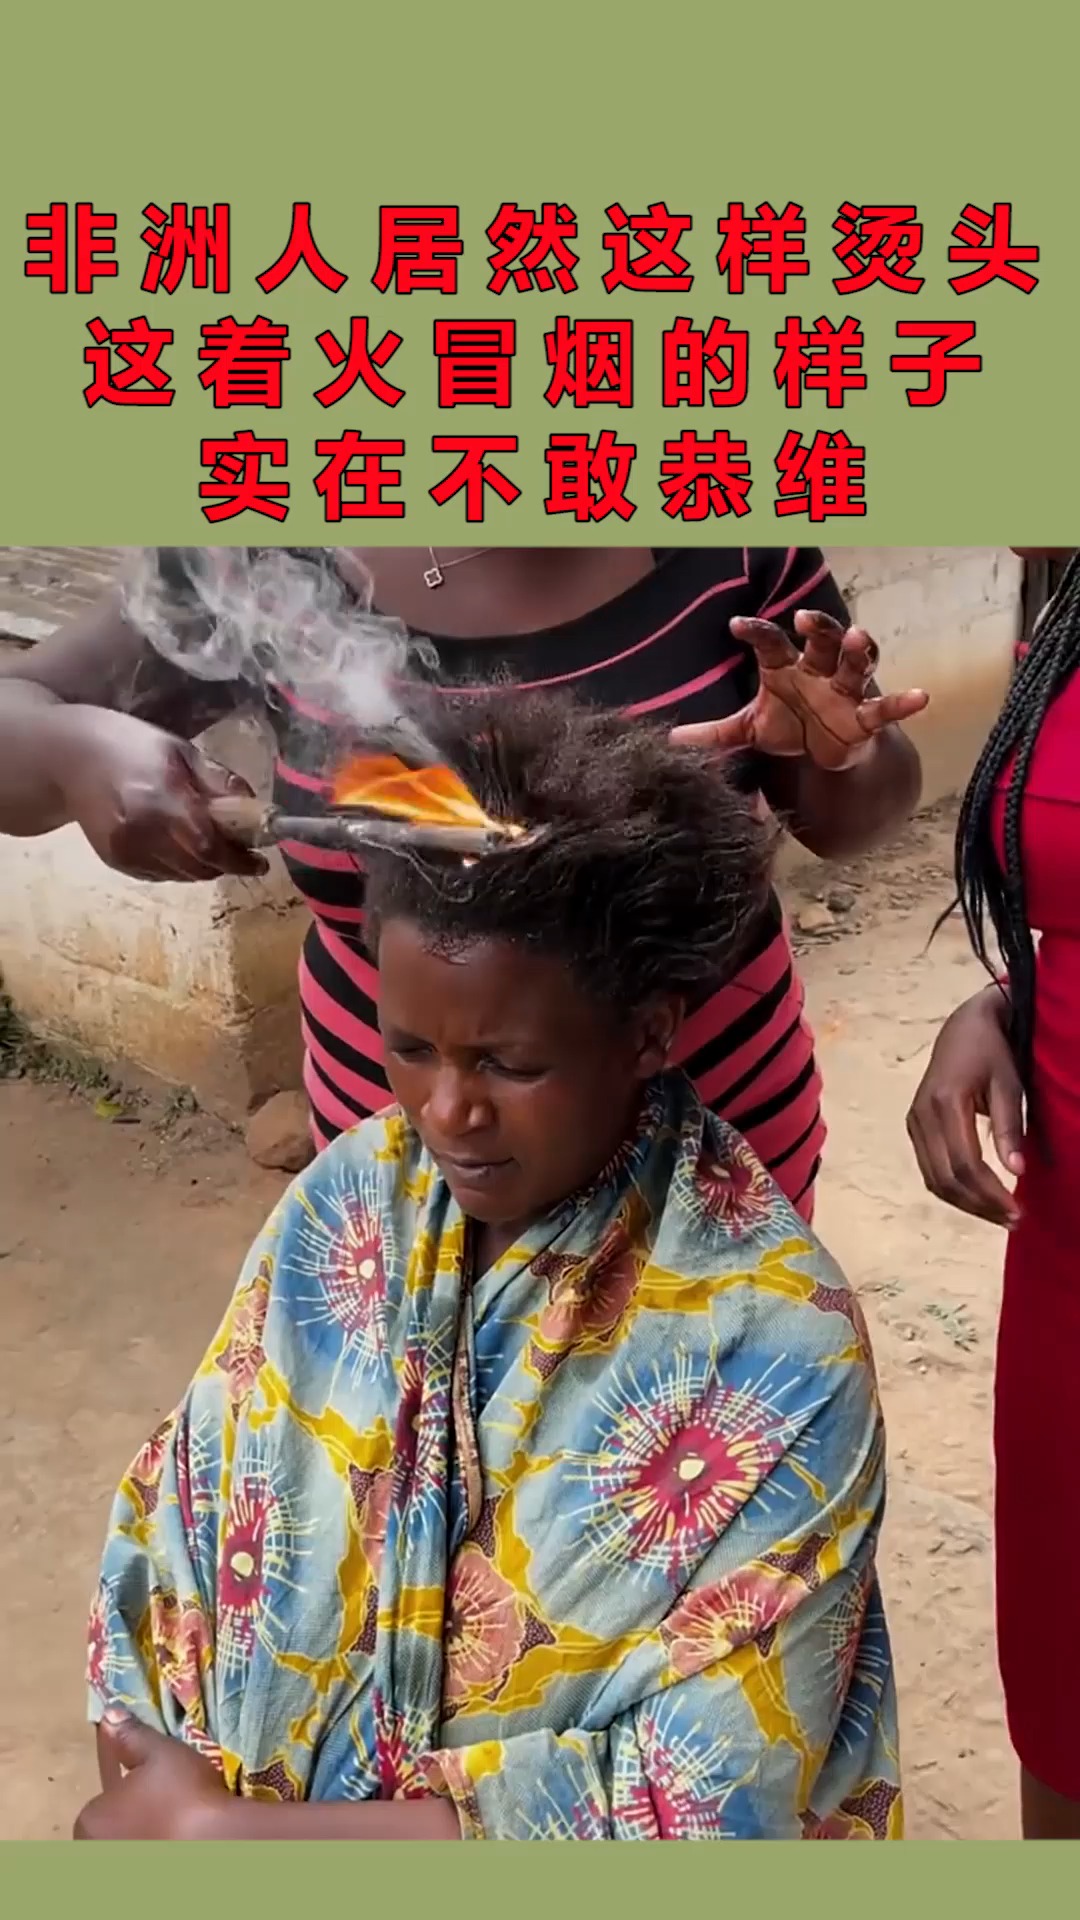 非洲人居然这样烫头发,这着火冒烟的样子,实在不敢恭维!